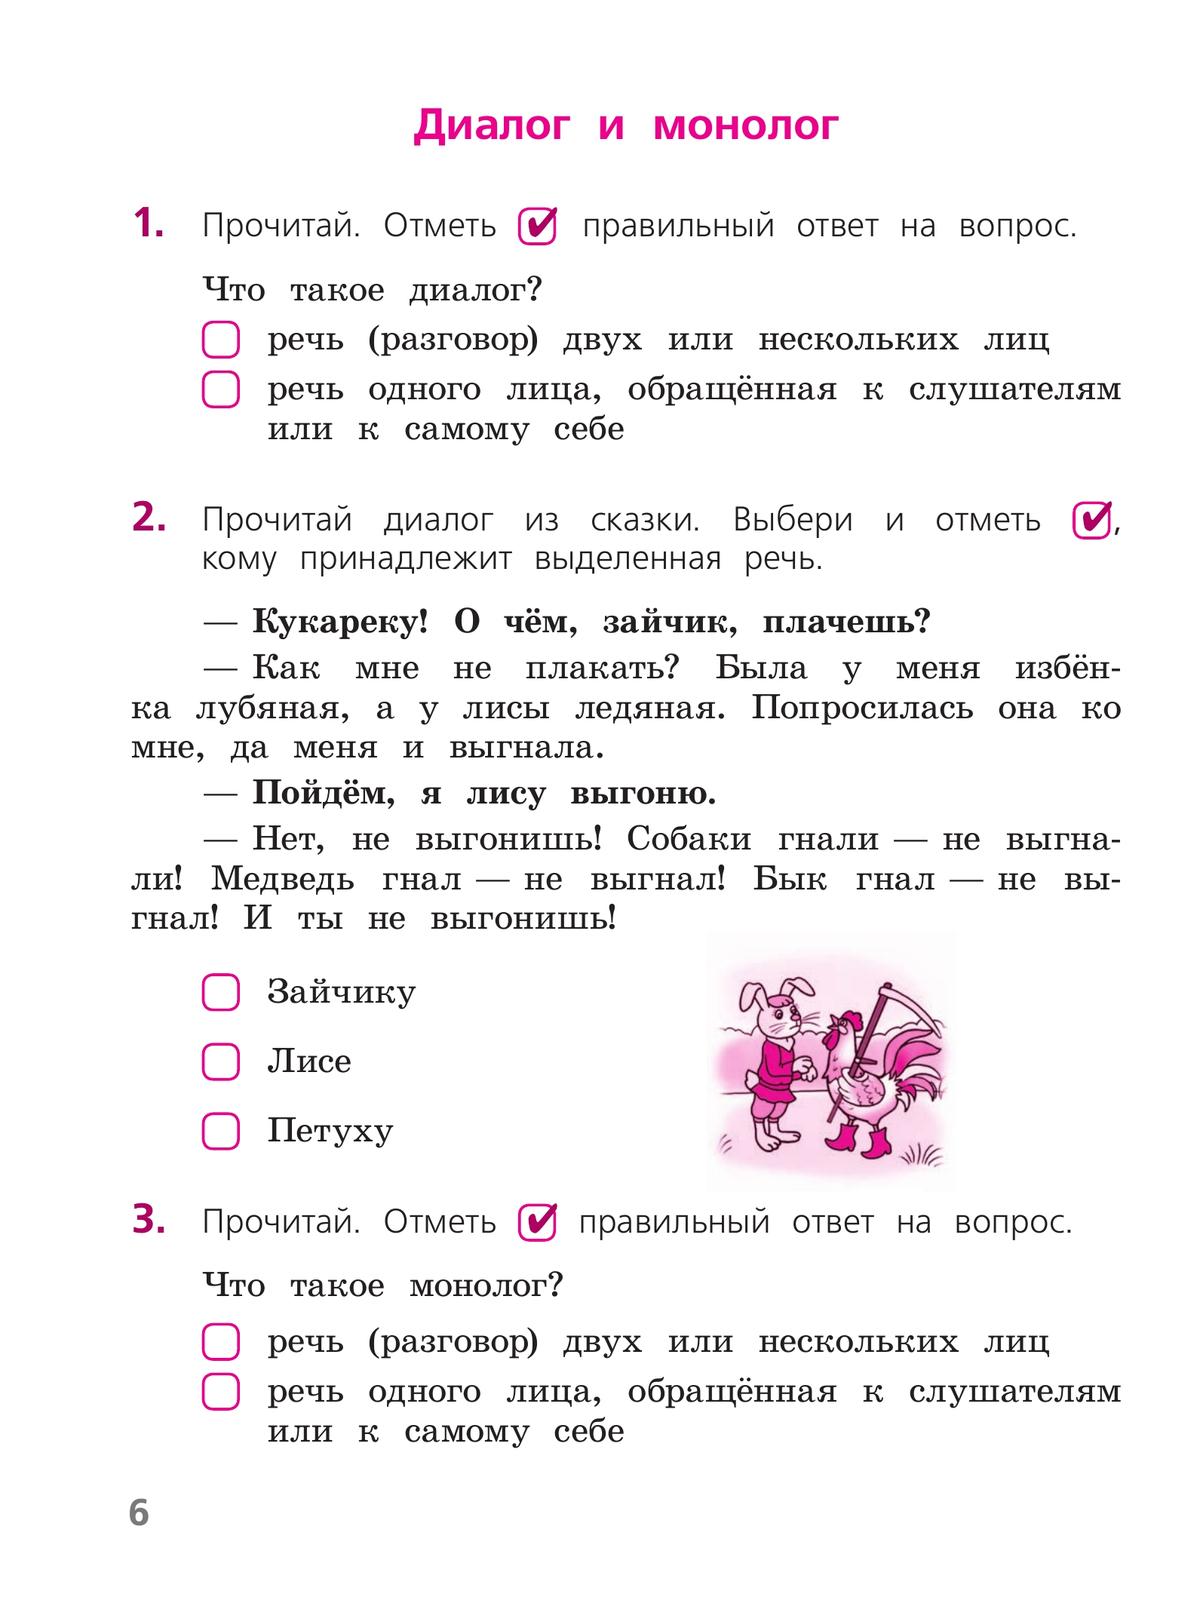 Русский язык. Тетрадь учебных достижений. 2 класс 4